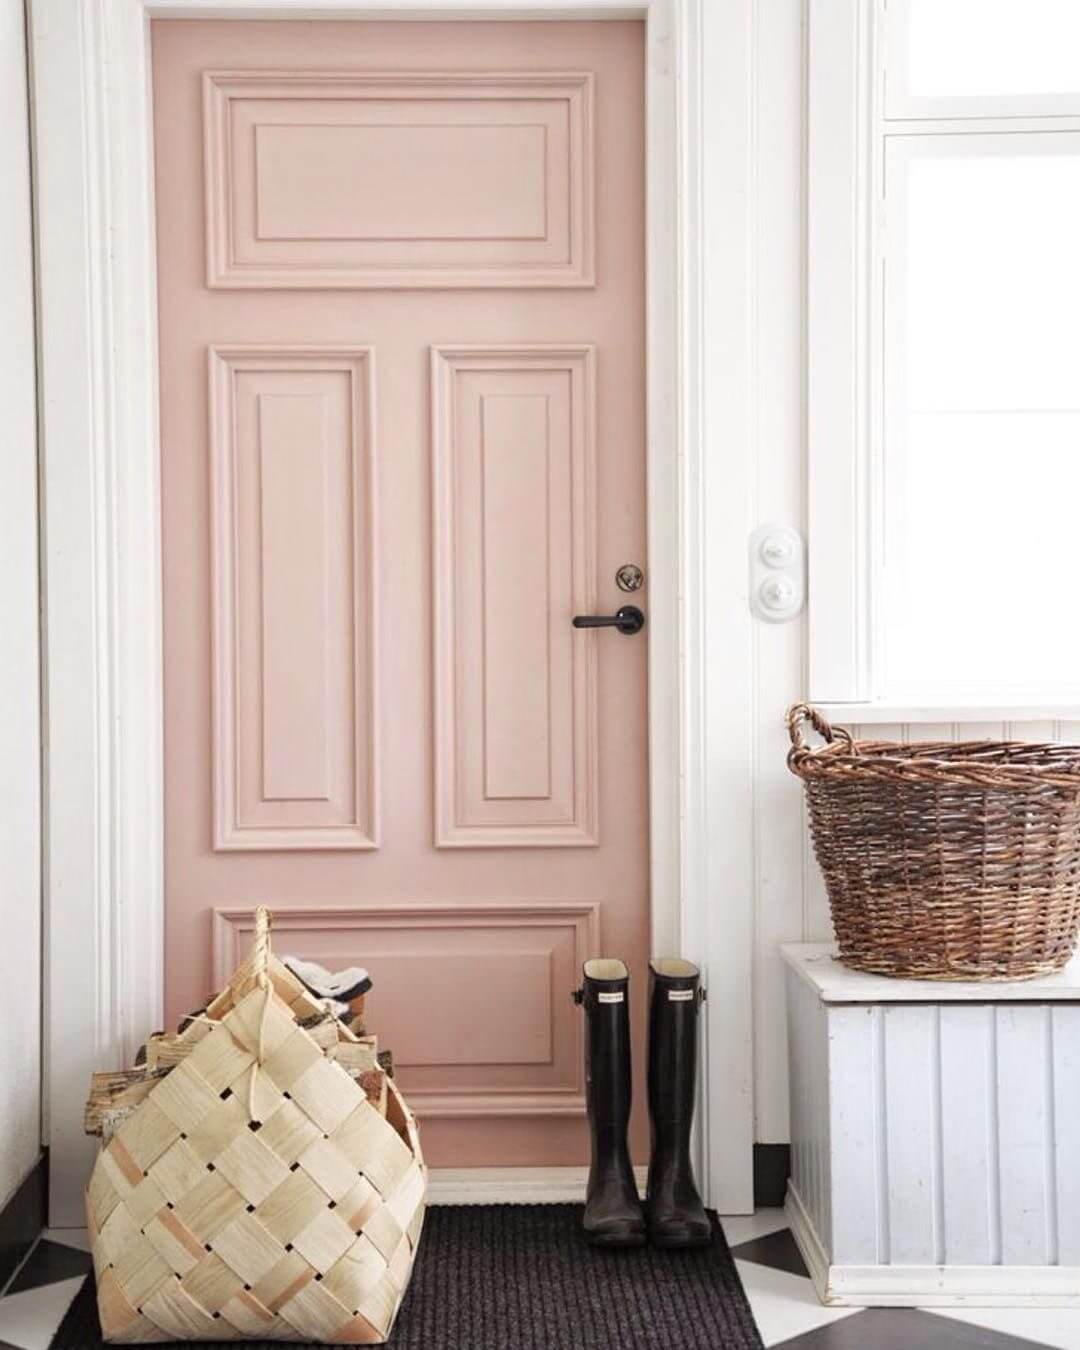 Enter the Bold Pink Door